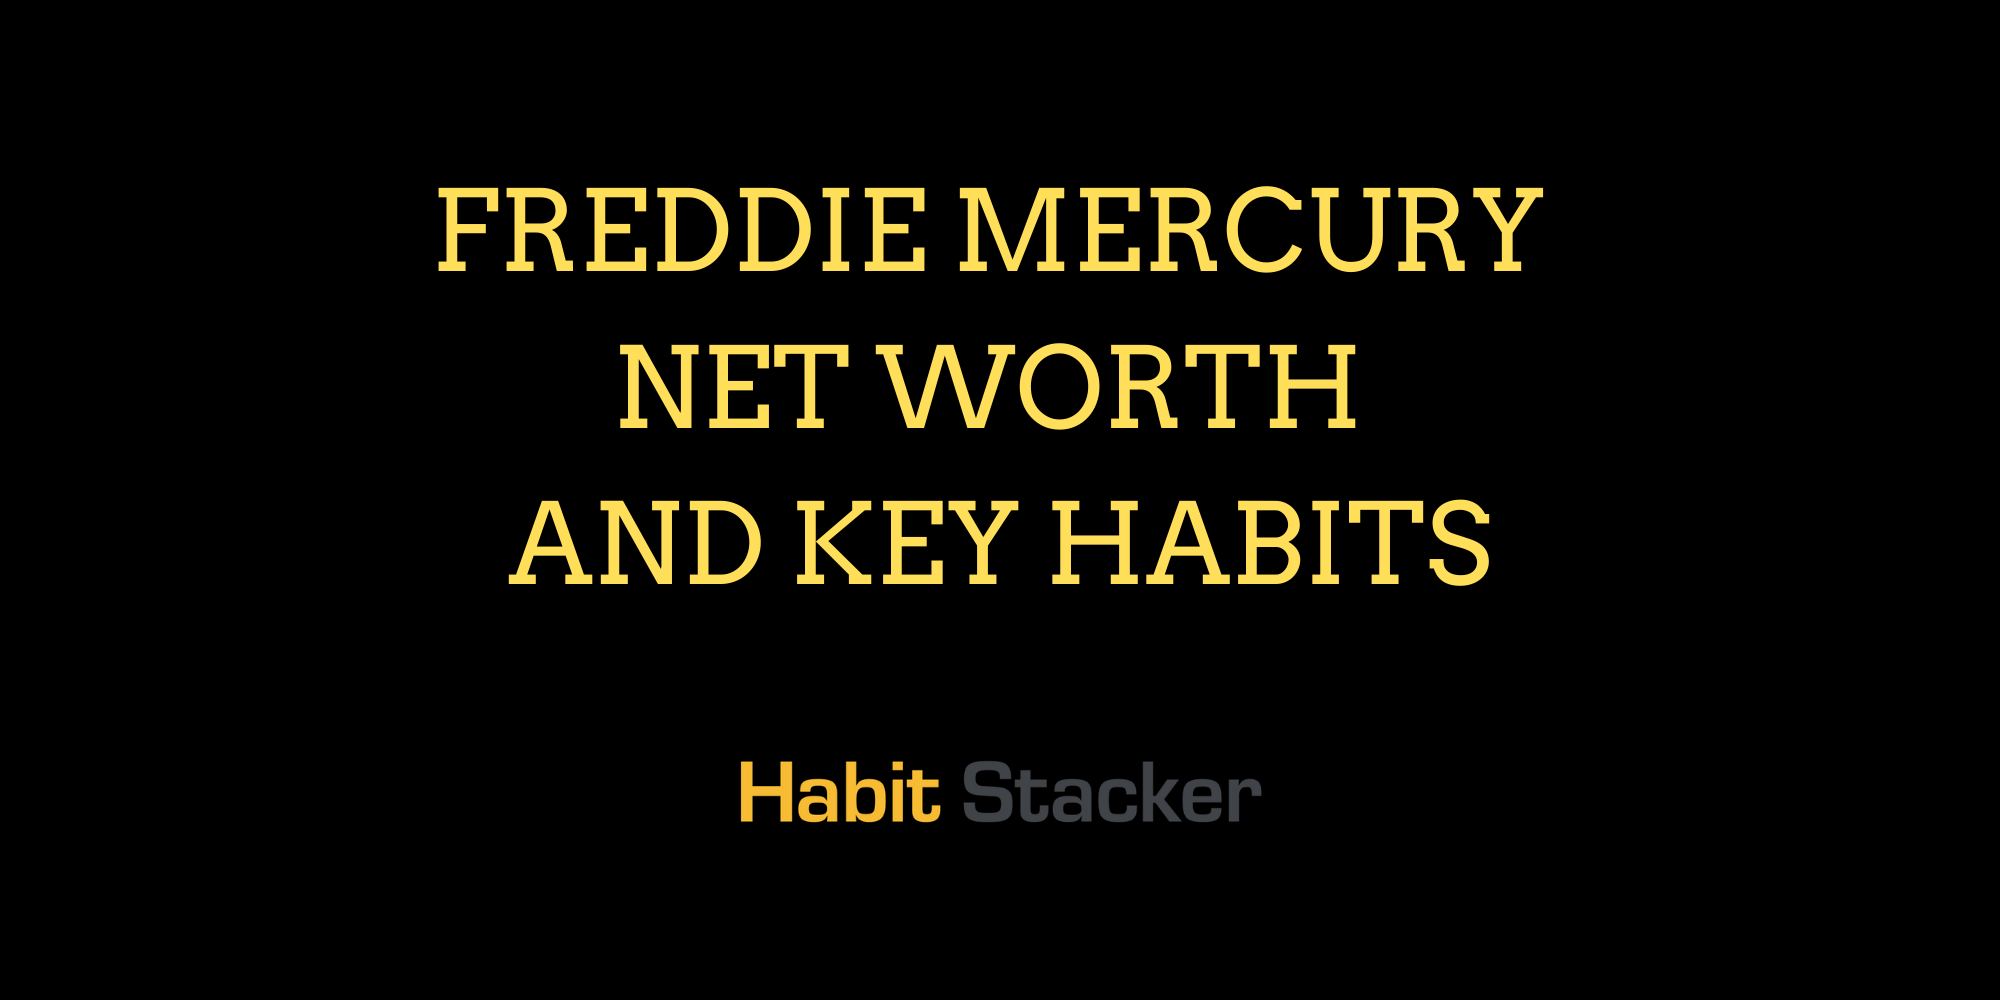 Freddie Mercury Net Worth and Key Habits